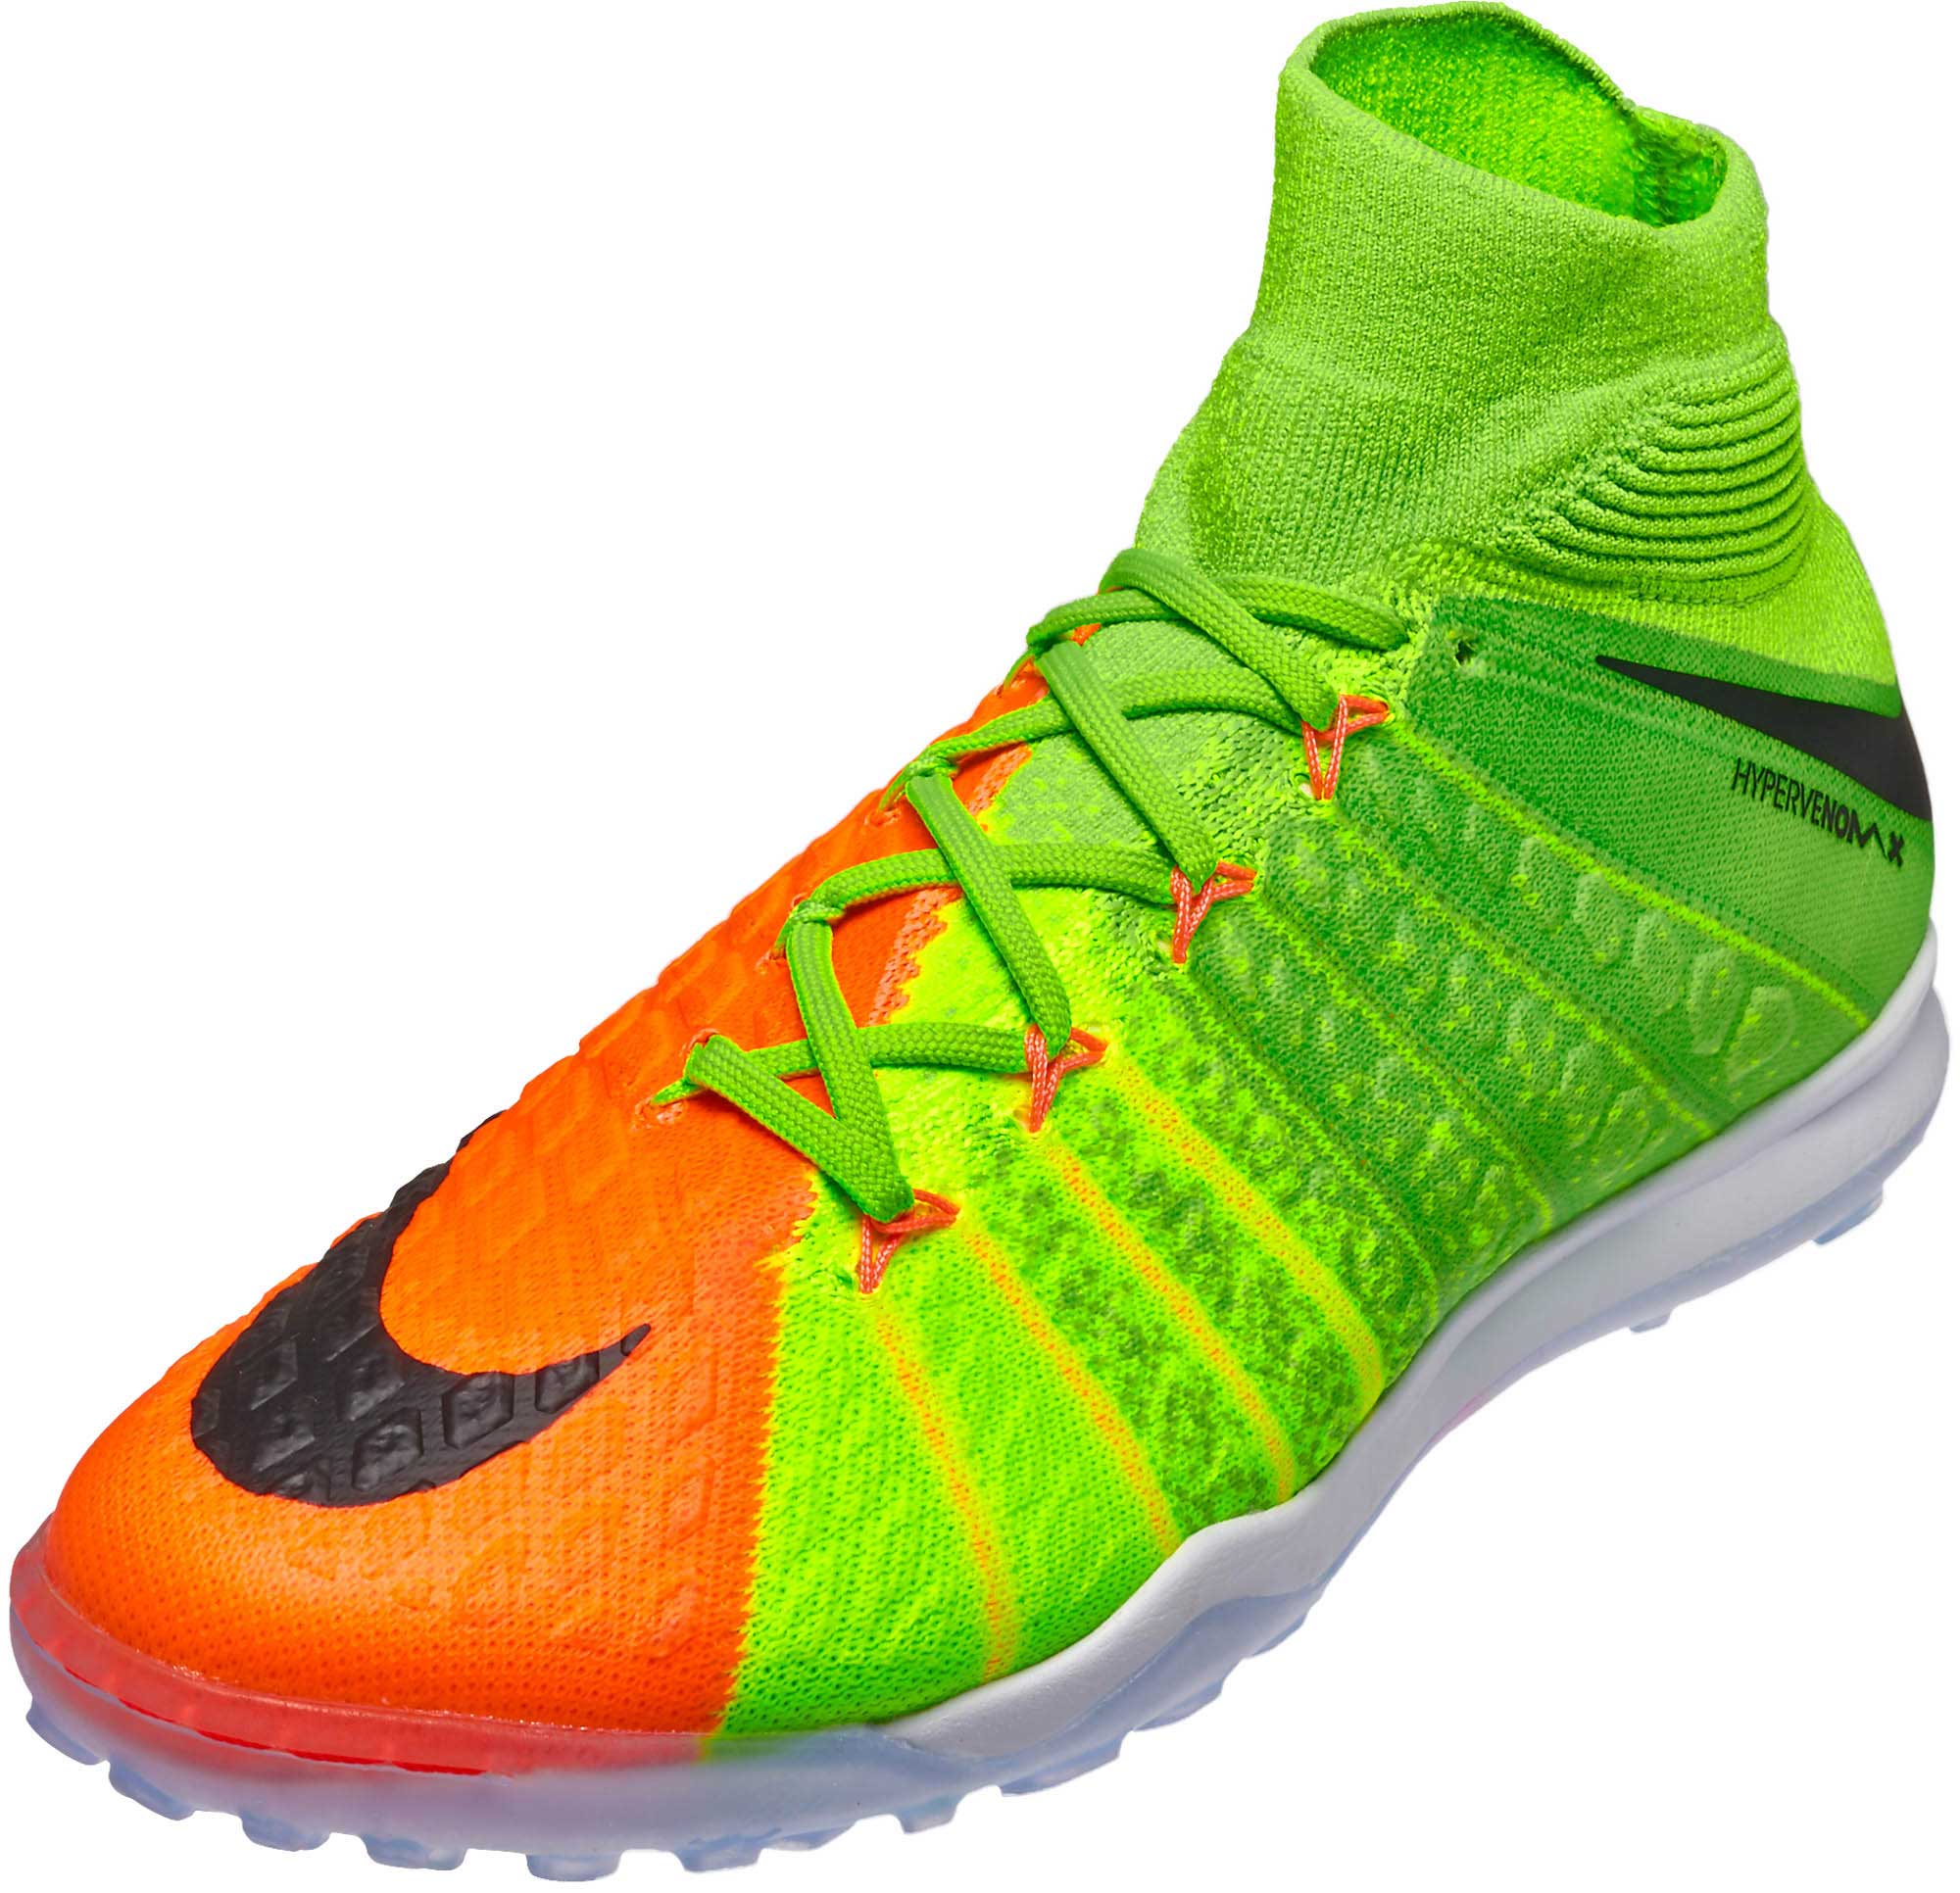 Nike HypervenomX Proximo II TF - Hypervenom Turf Shoes